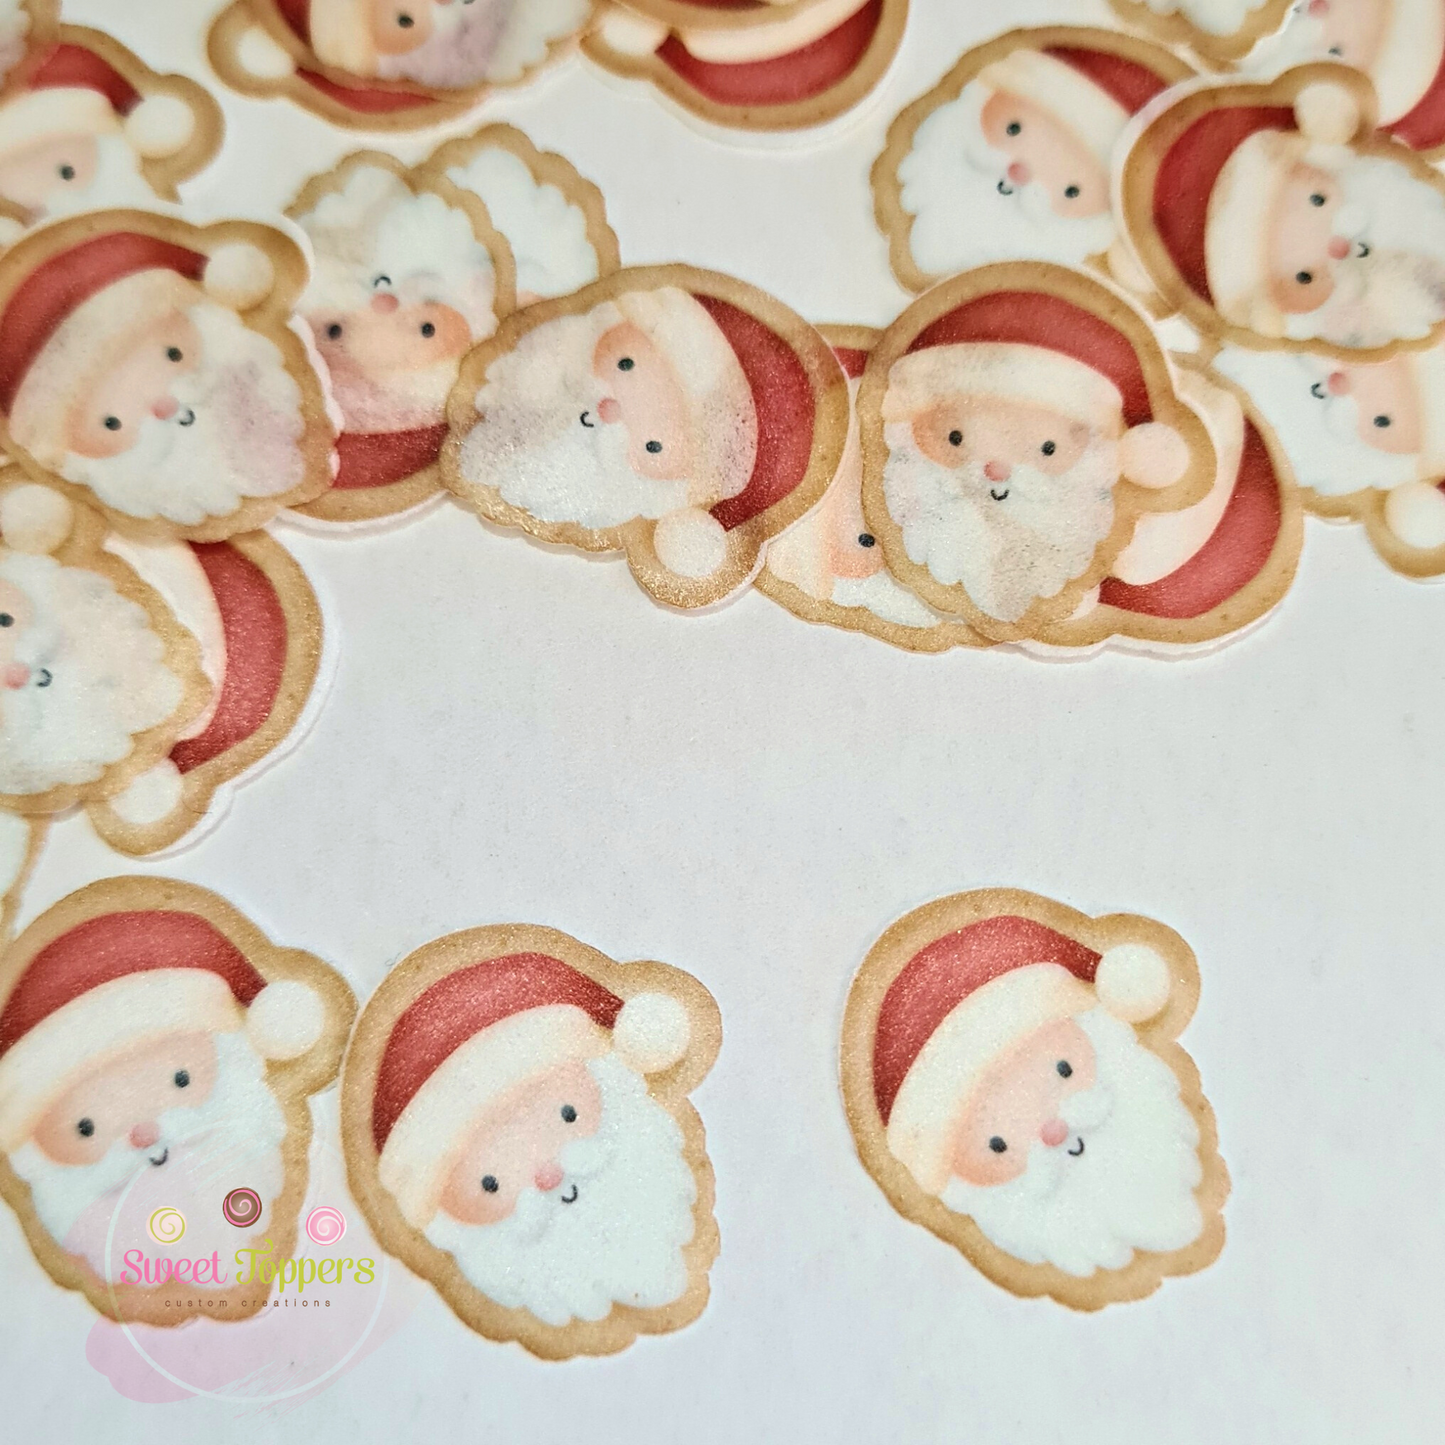 Mini Santa edible confetti- Pre-cut edible wafer confetti